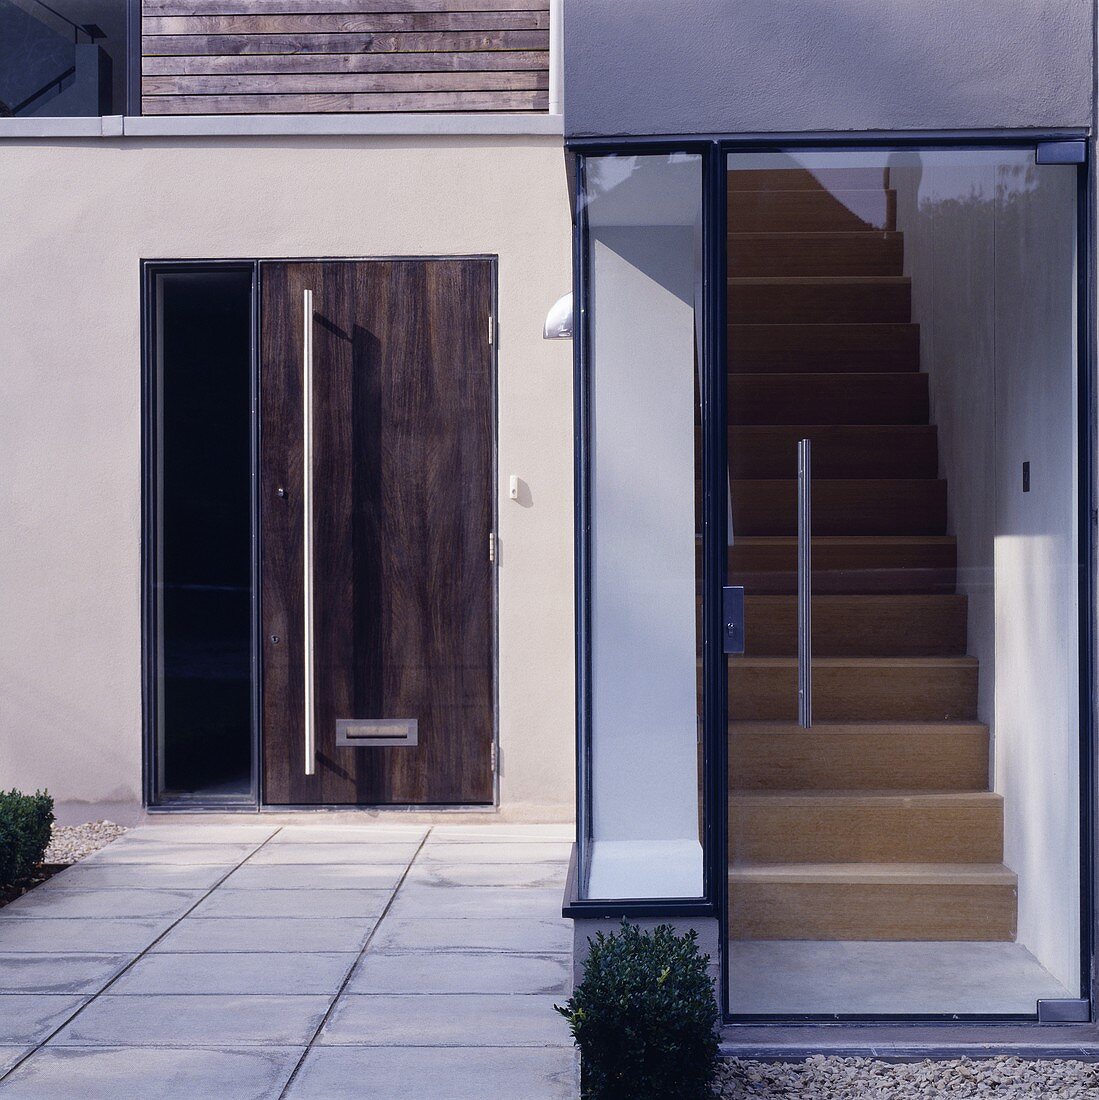 Verglaster Hauseingang eines modernen Wohnhauses mit Blick auf Treppenaufgang und zusätzliche Eingangstür aus Holz